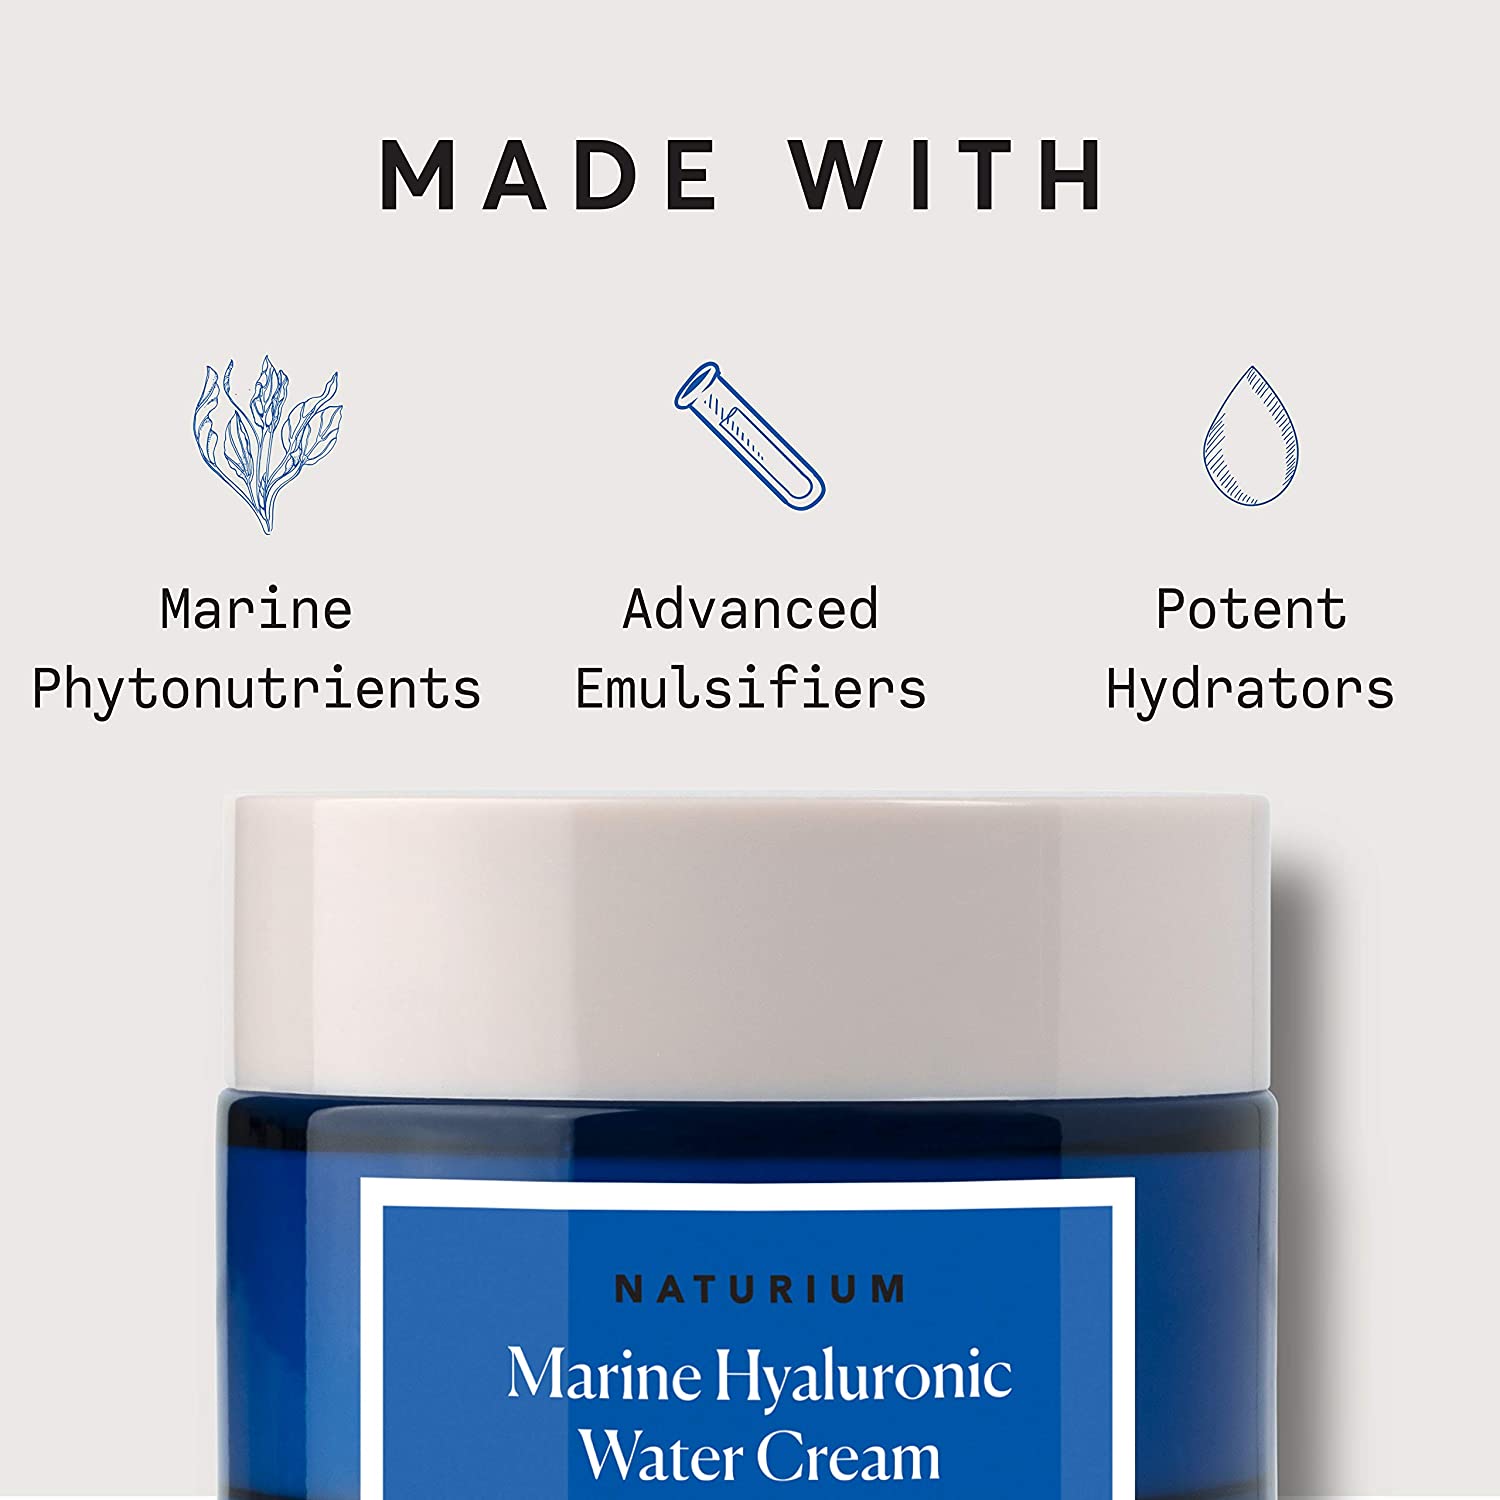 Naturium Marine Hyaluronic Water Cream